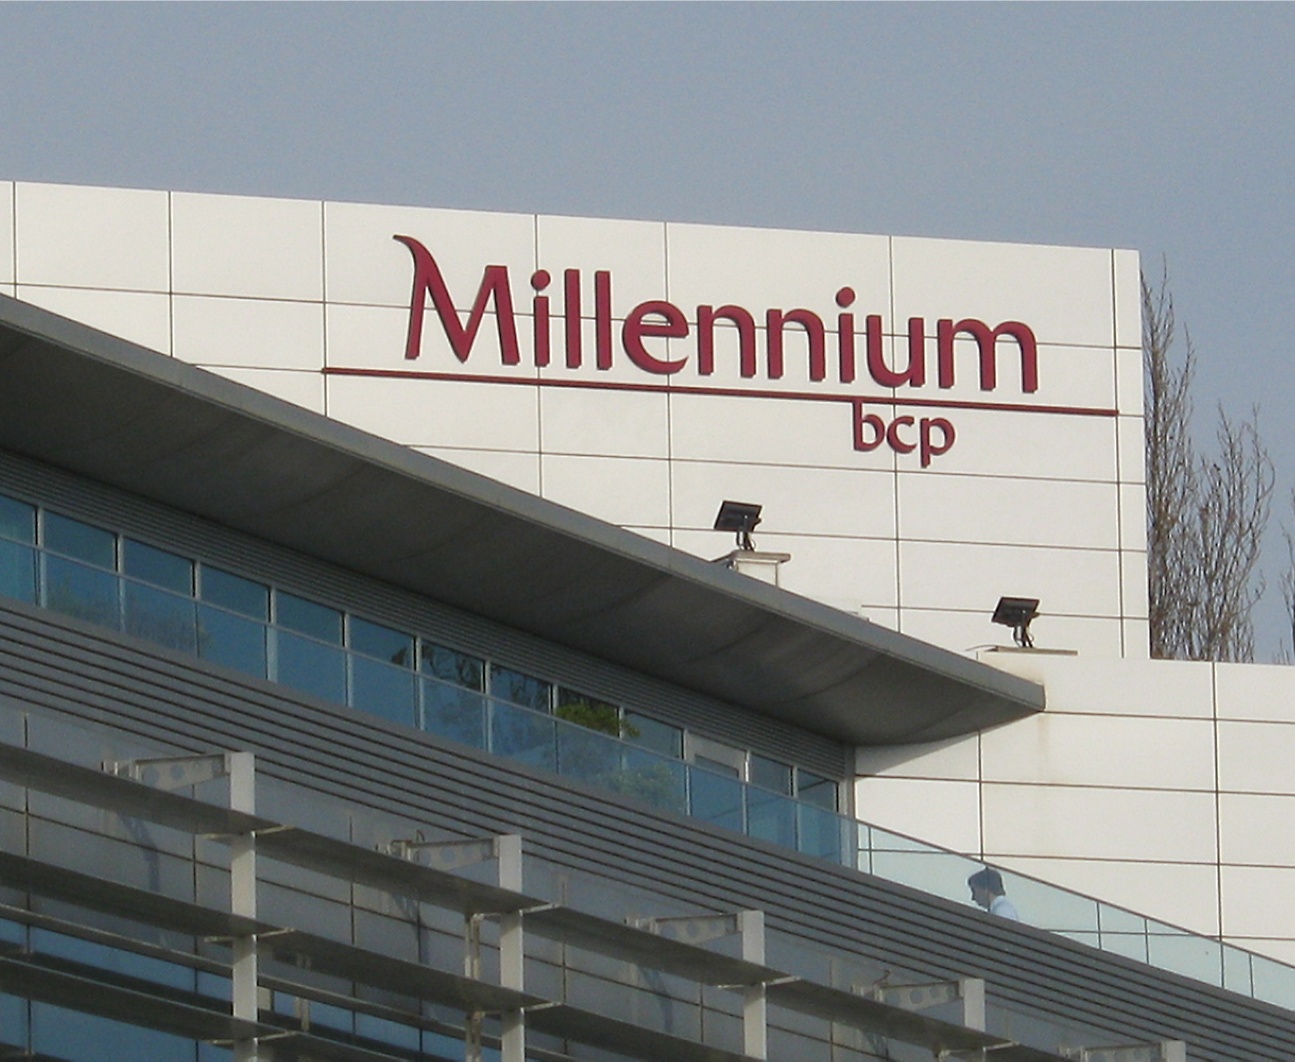 Millennium bcp building view